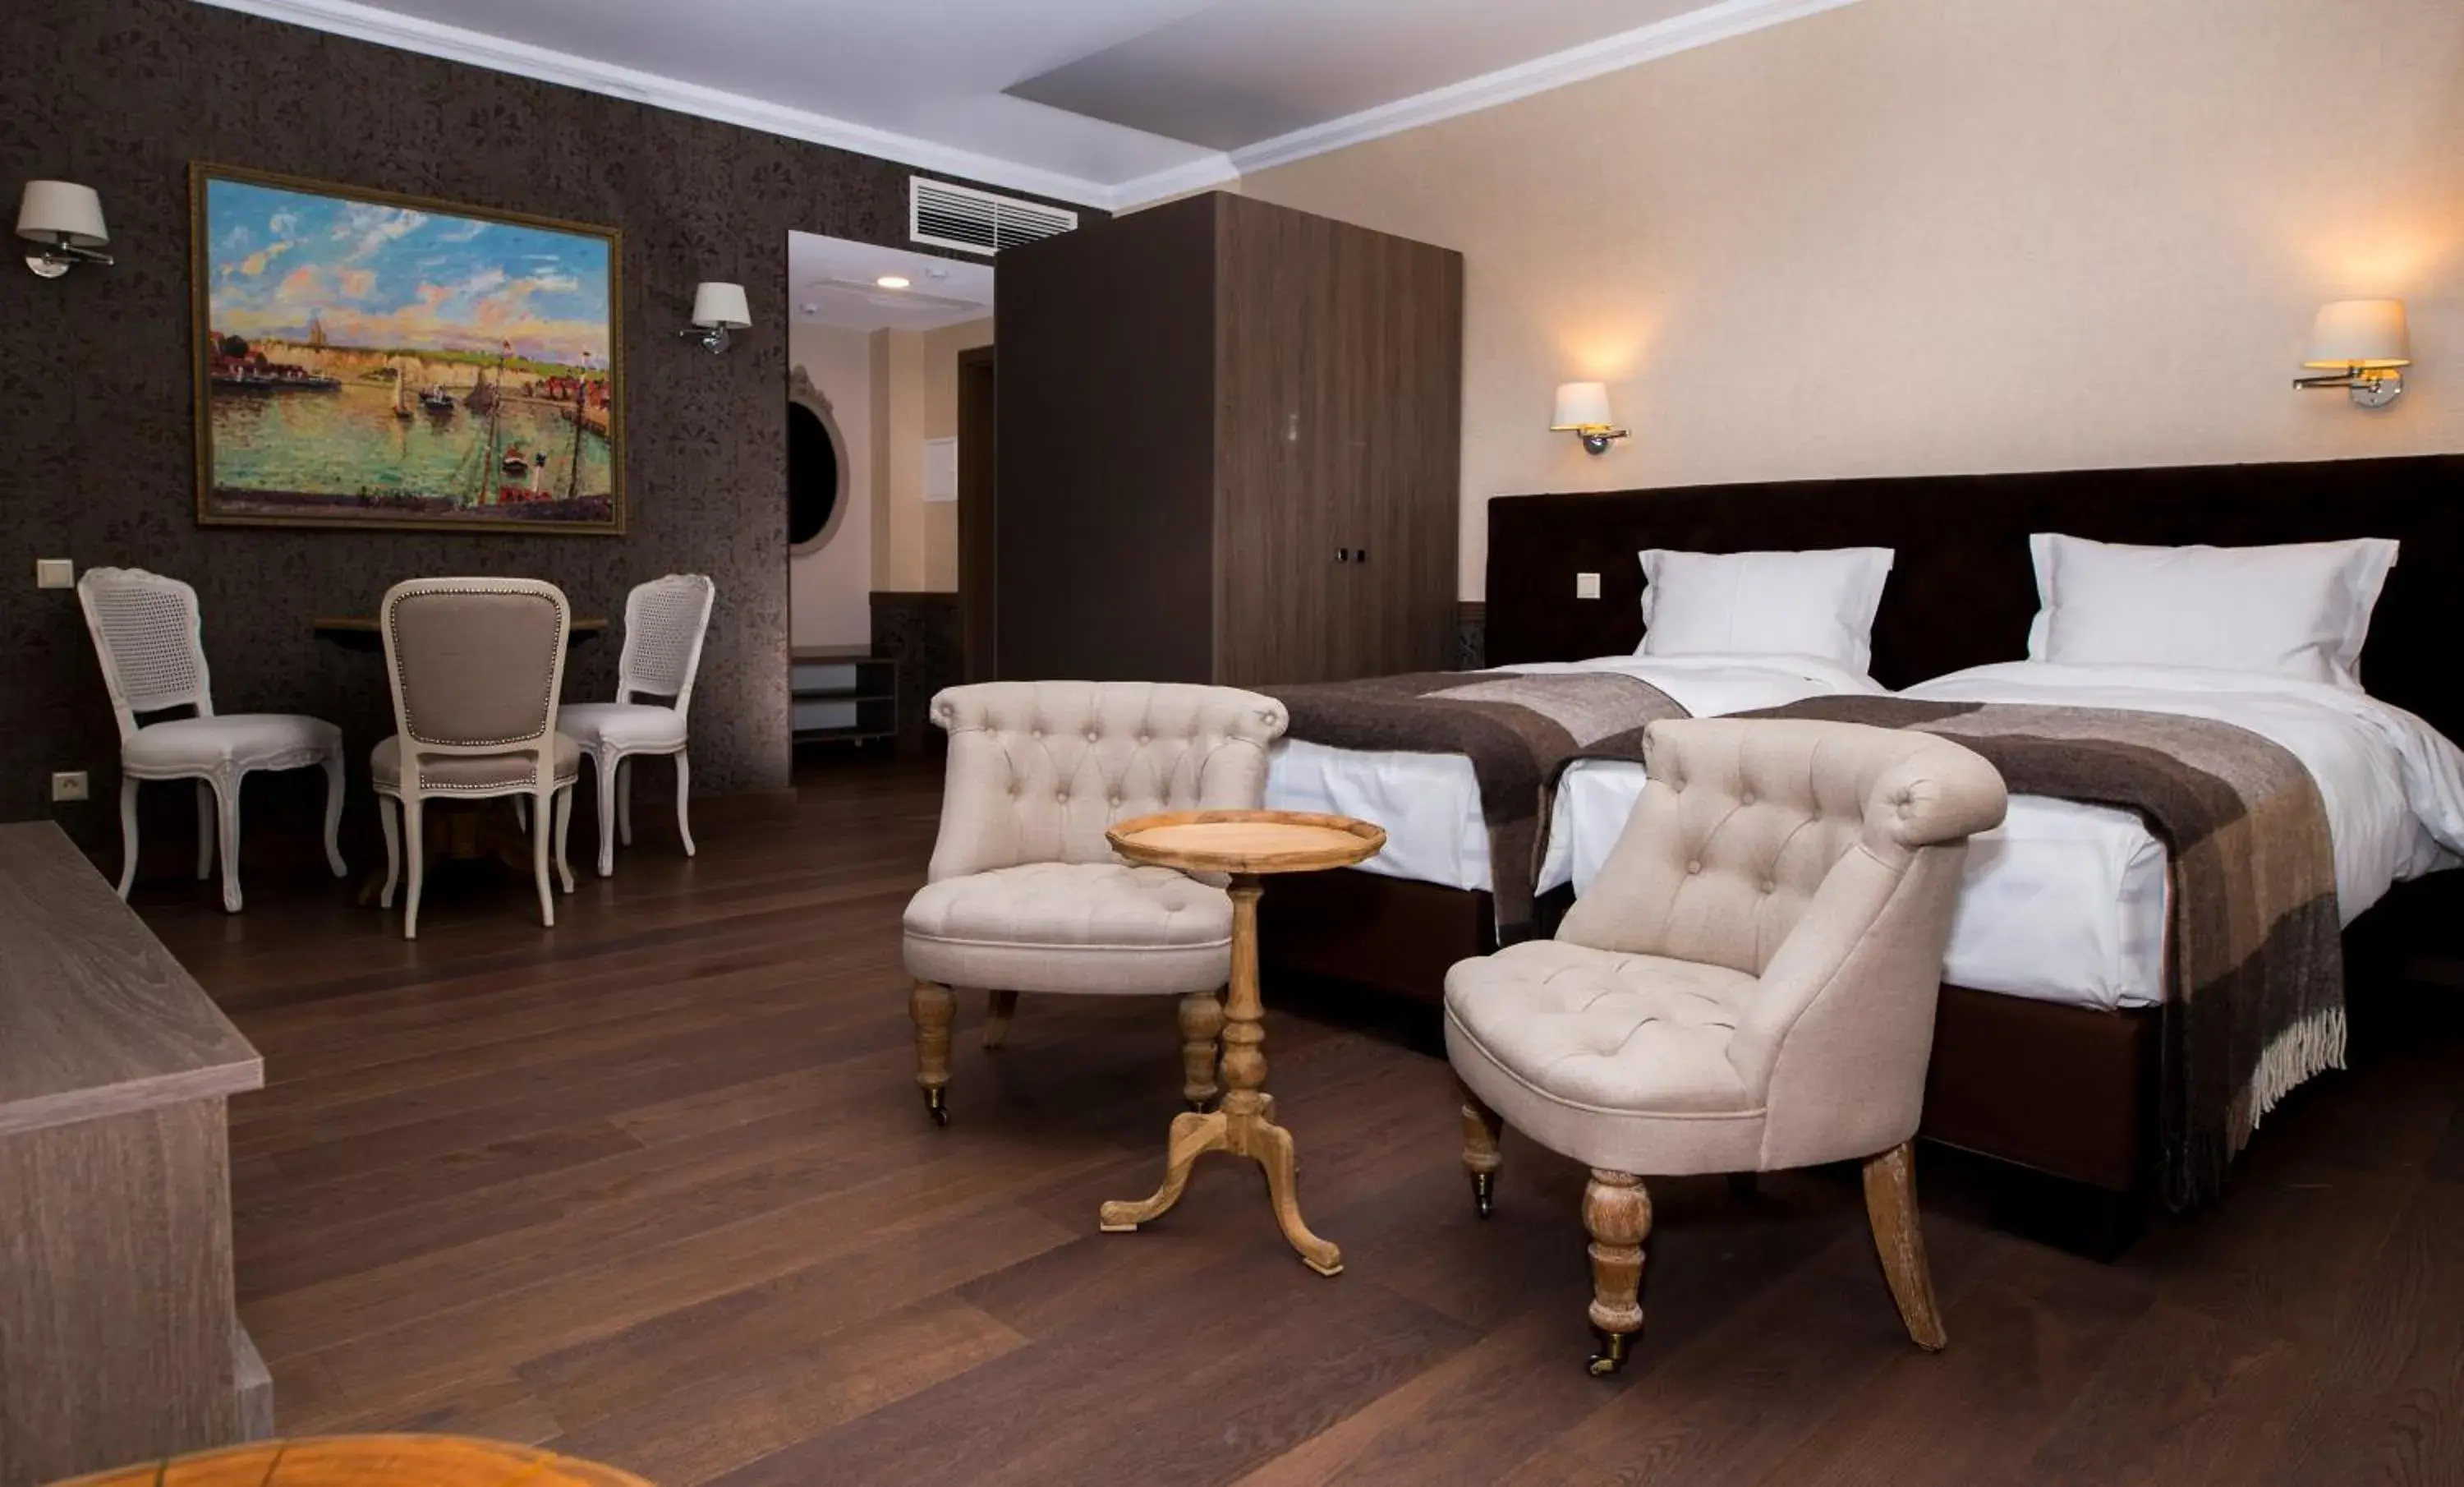 Bedroom, Lounge/Bar in ZENTRUM Hotel